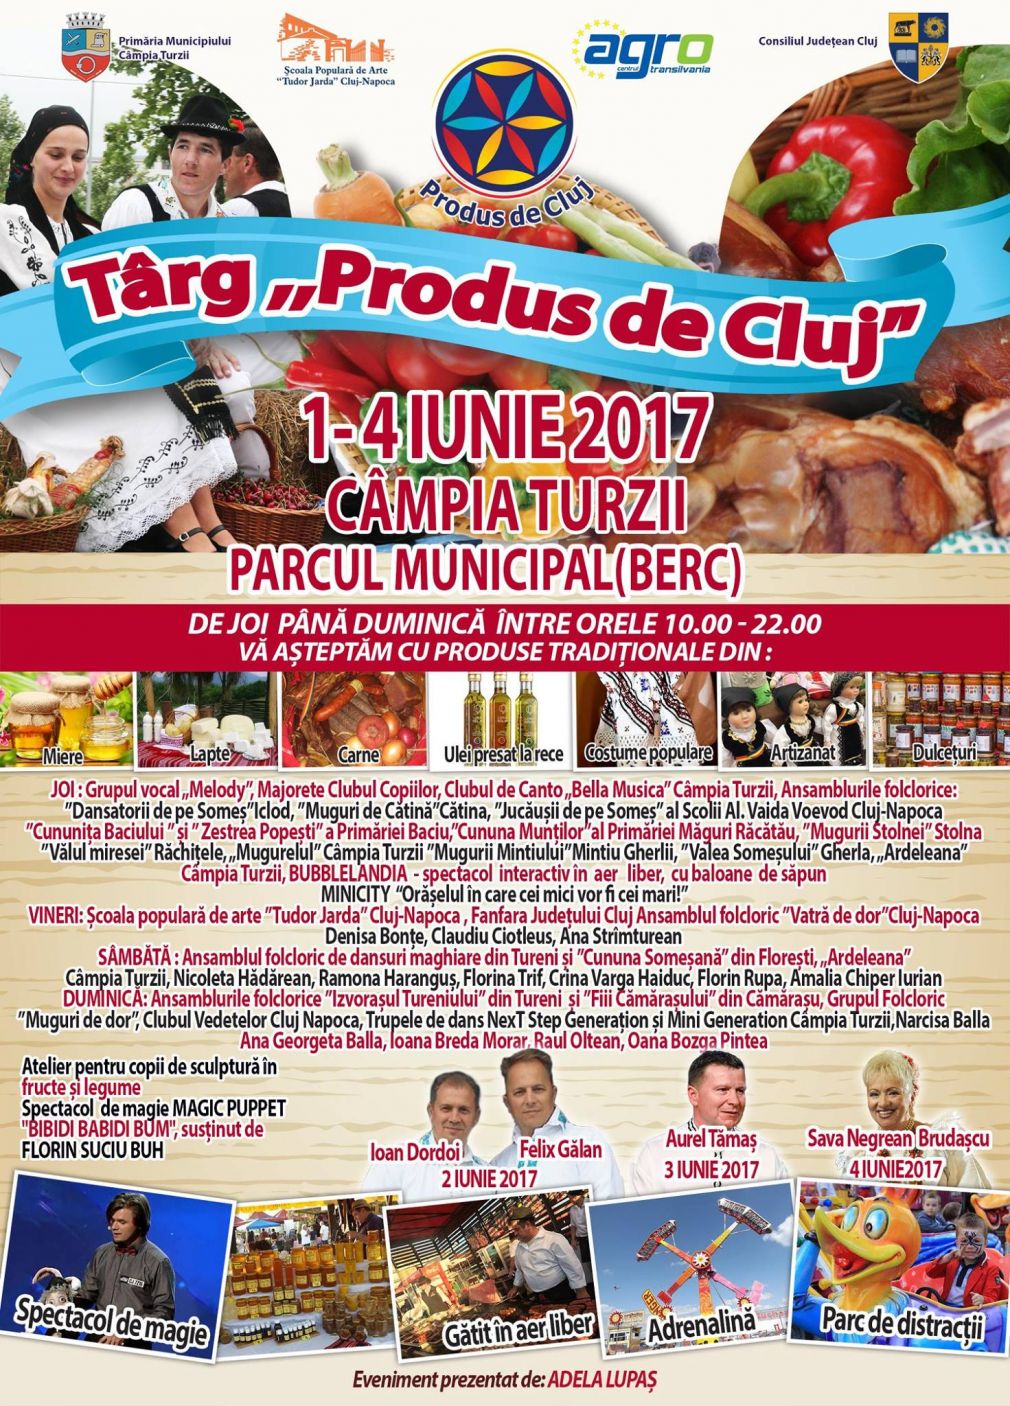 Târgul Produs de Cluj va avea loc la Câmpia Turzii în perioada 1-4 iunie 2017